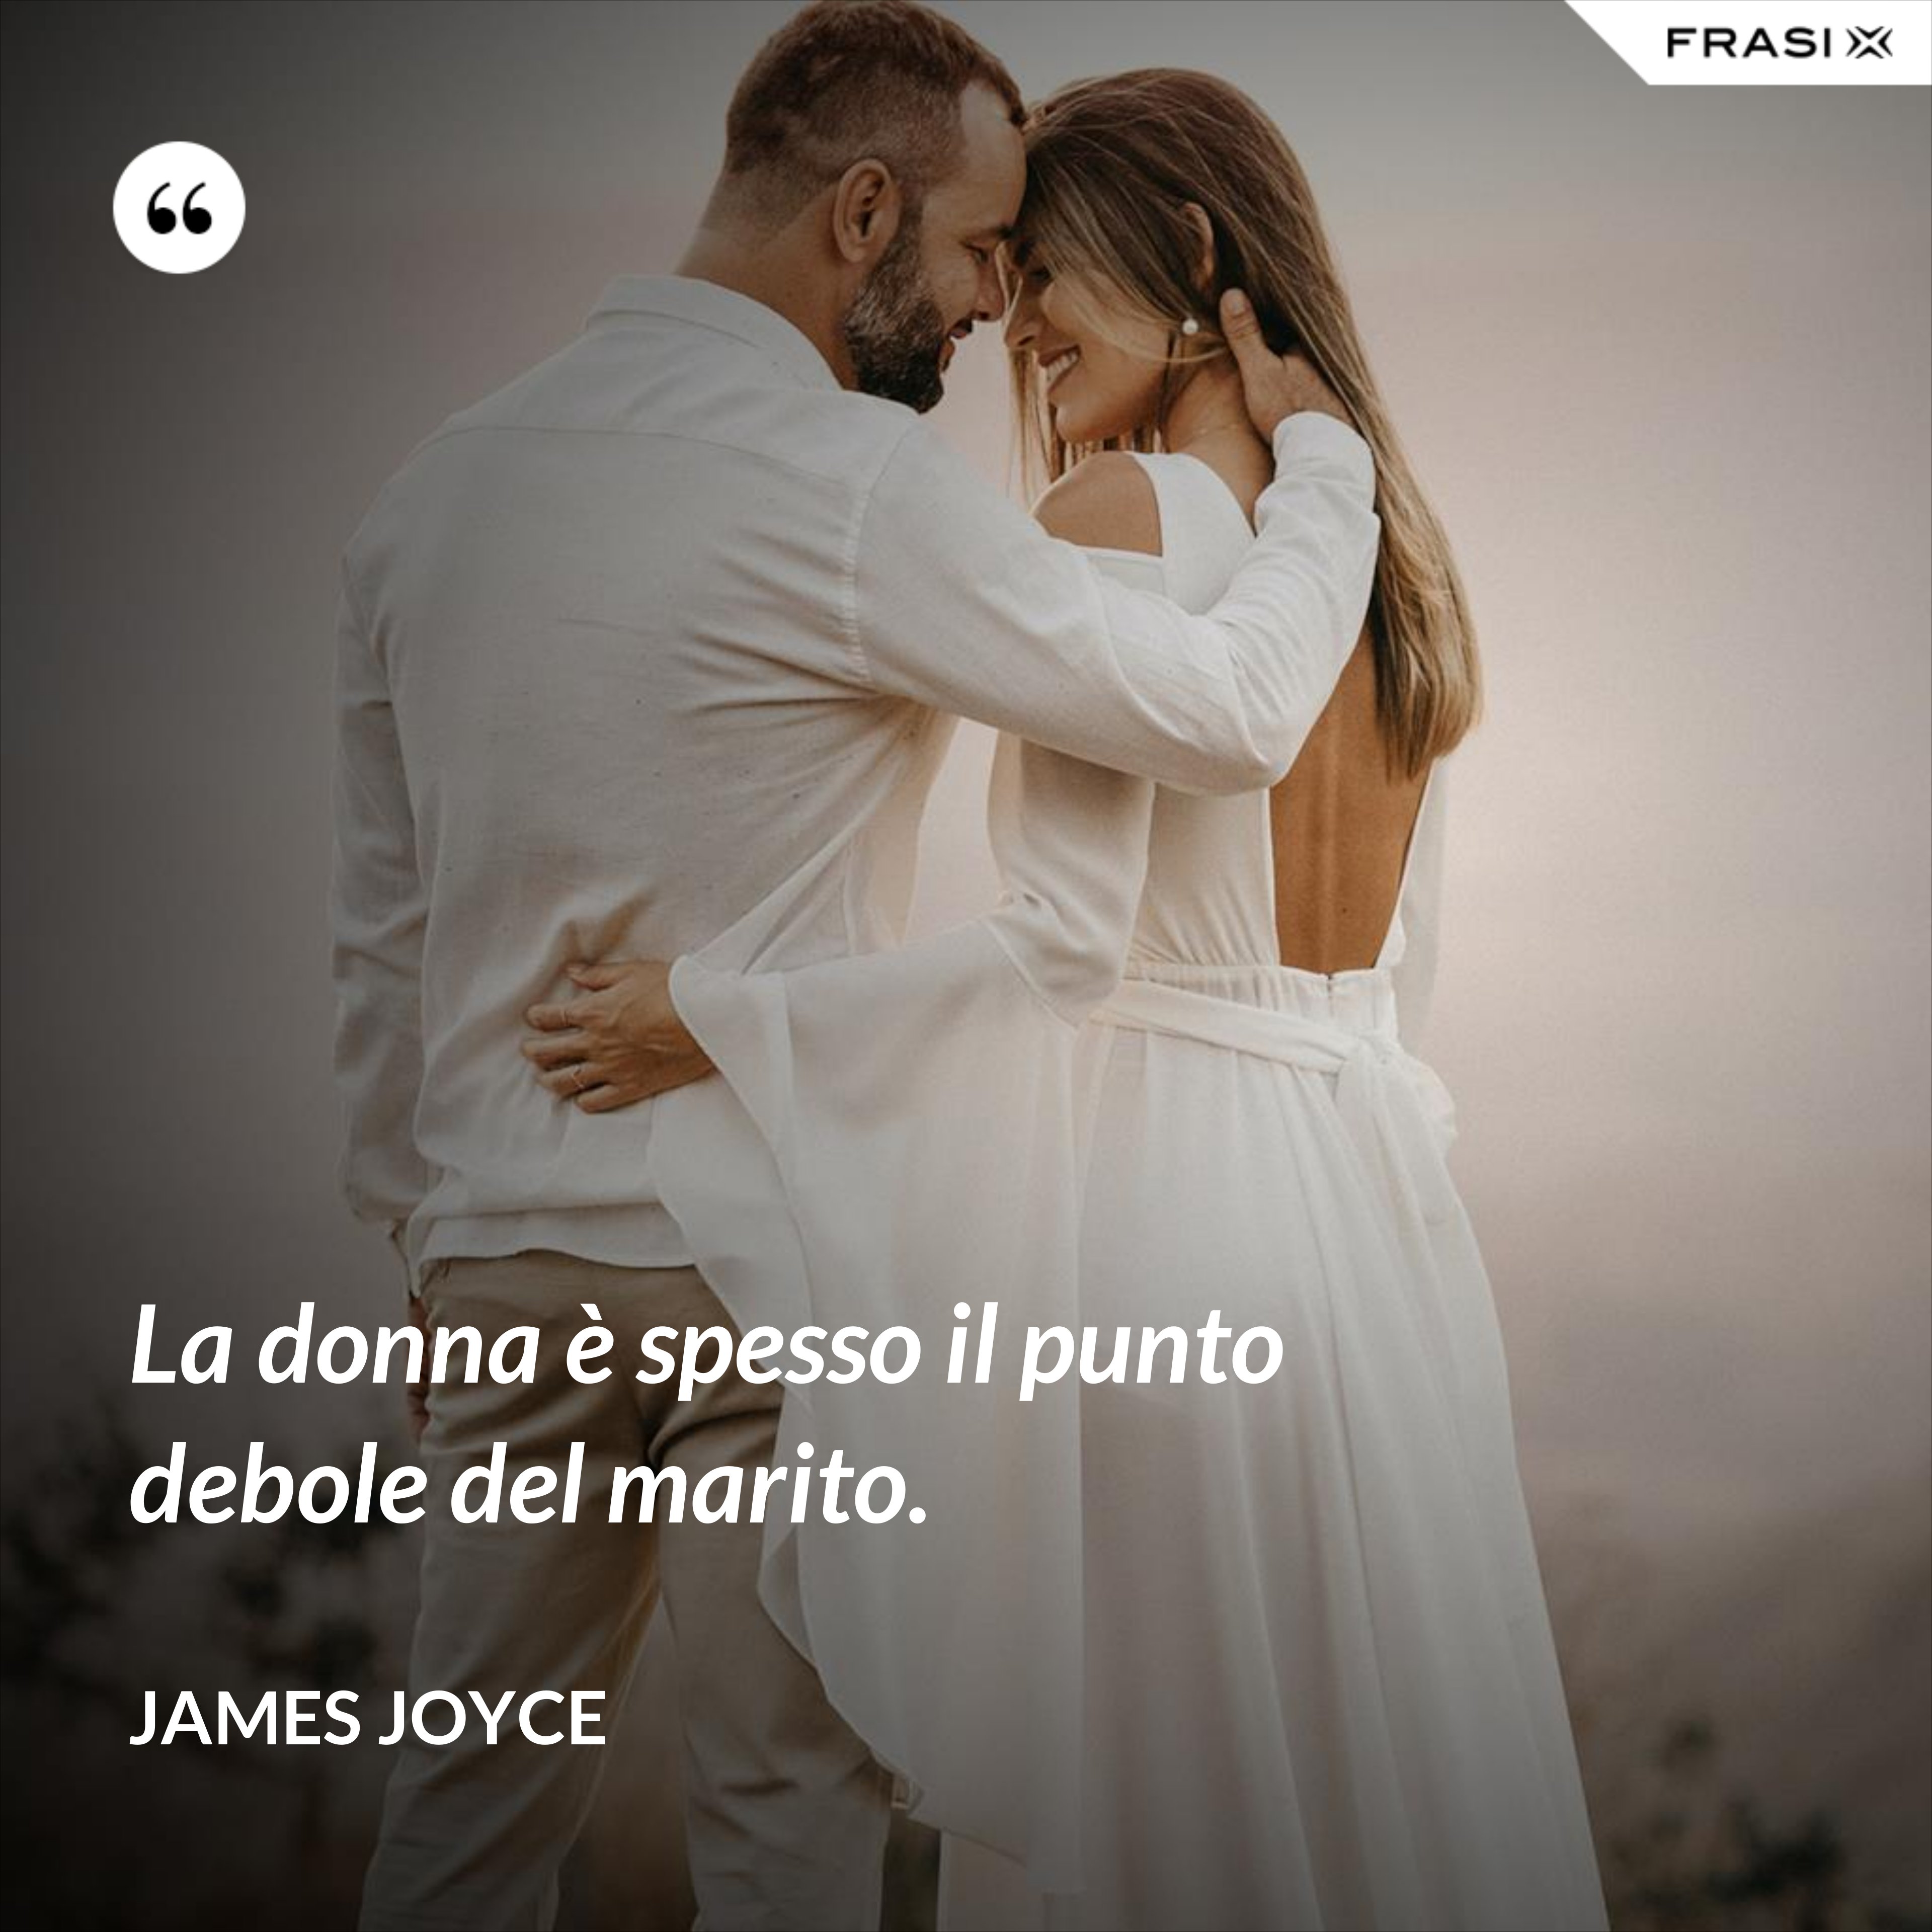 La donna è spesso il punto debole del marito. - James Joyce